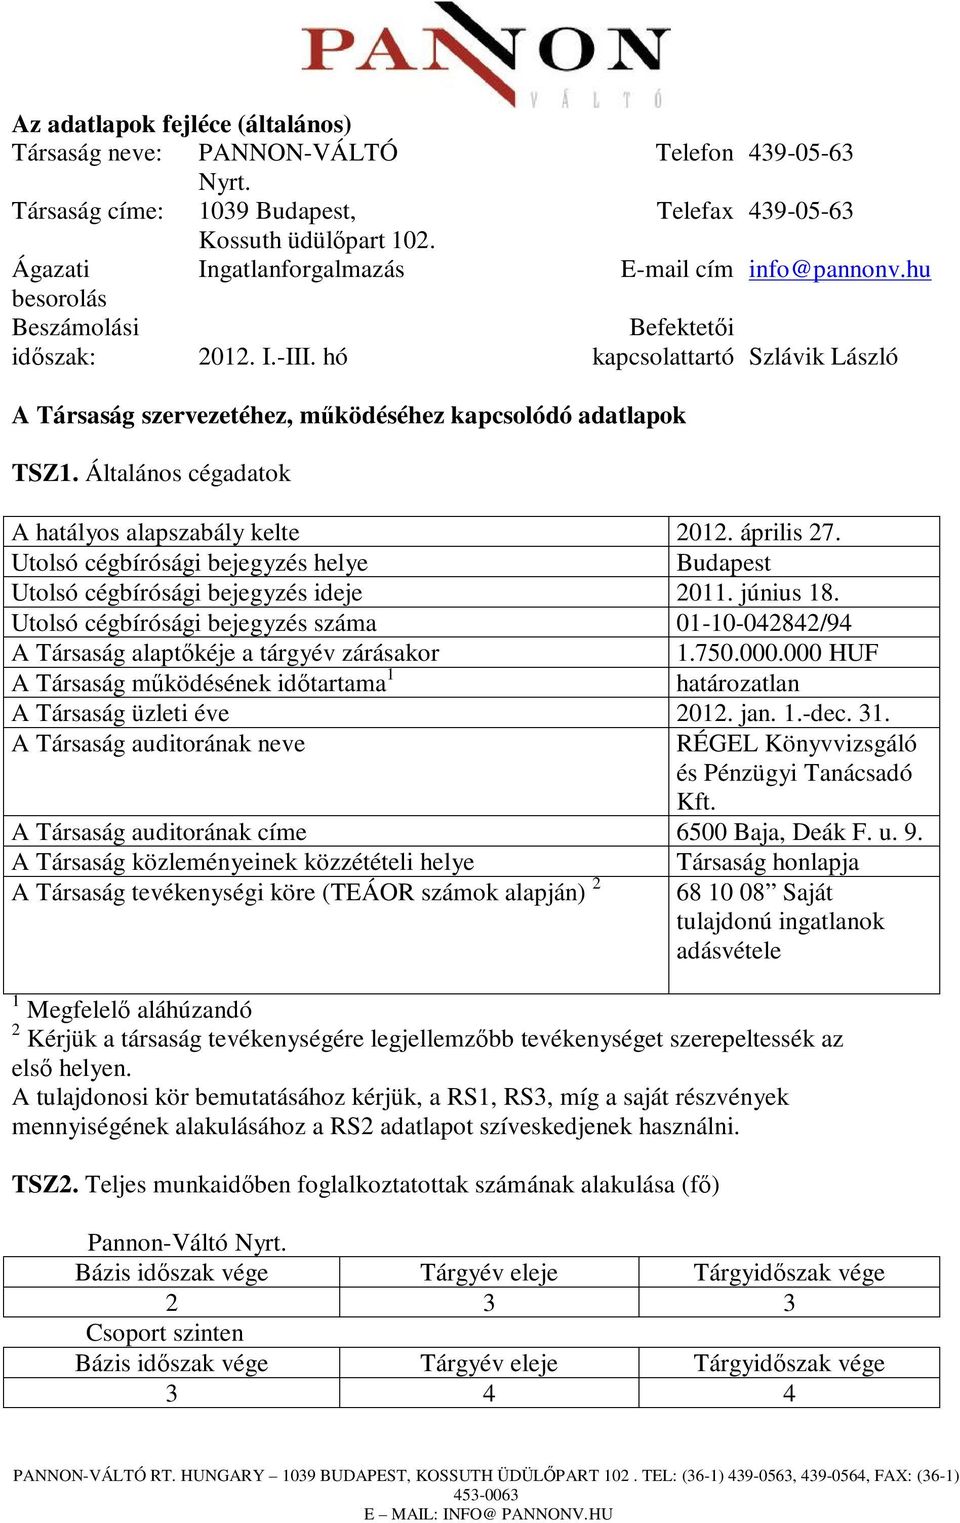 Általános cégadatok A hatályos alapszabály kelte 2012. április 27. Utolsó cégbírósági bejegyzés helye Budapest Utolsó cégbírósági bejegyzés ideje 2011. június 18.